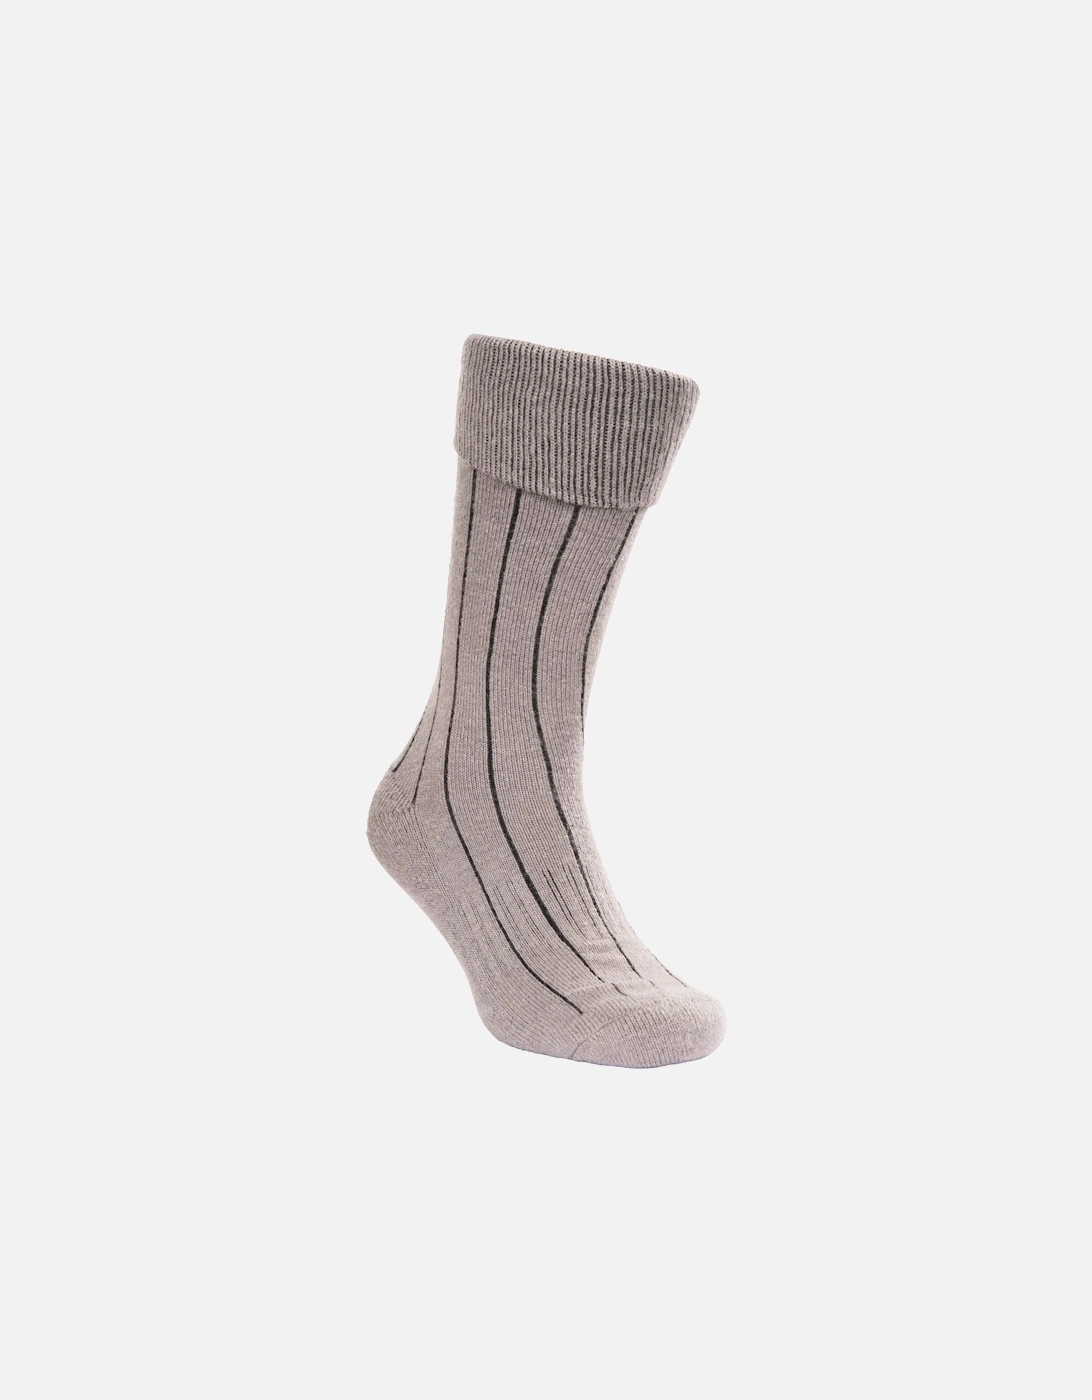 Unisex Adult Aroama Boot Socks, 6 of 5